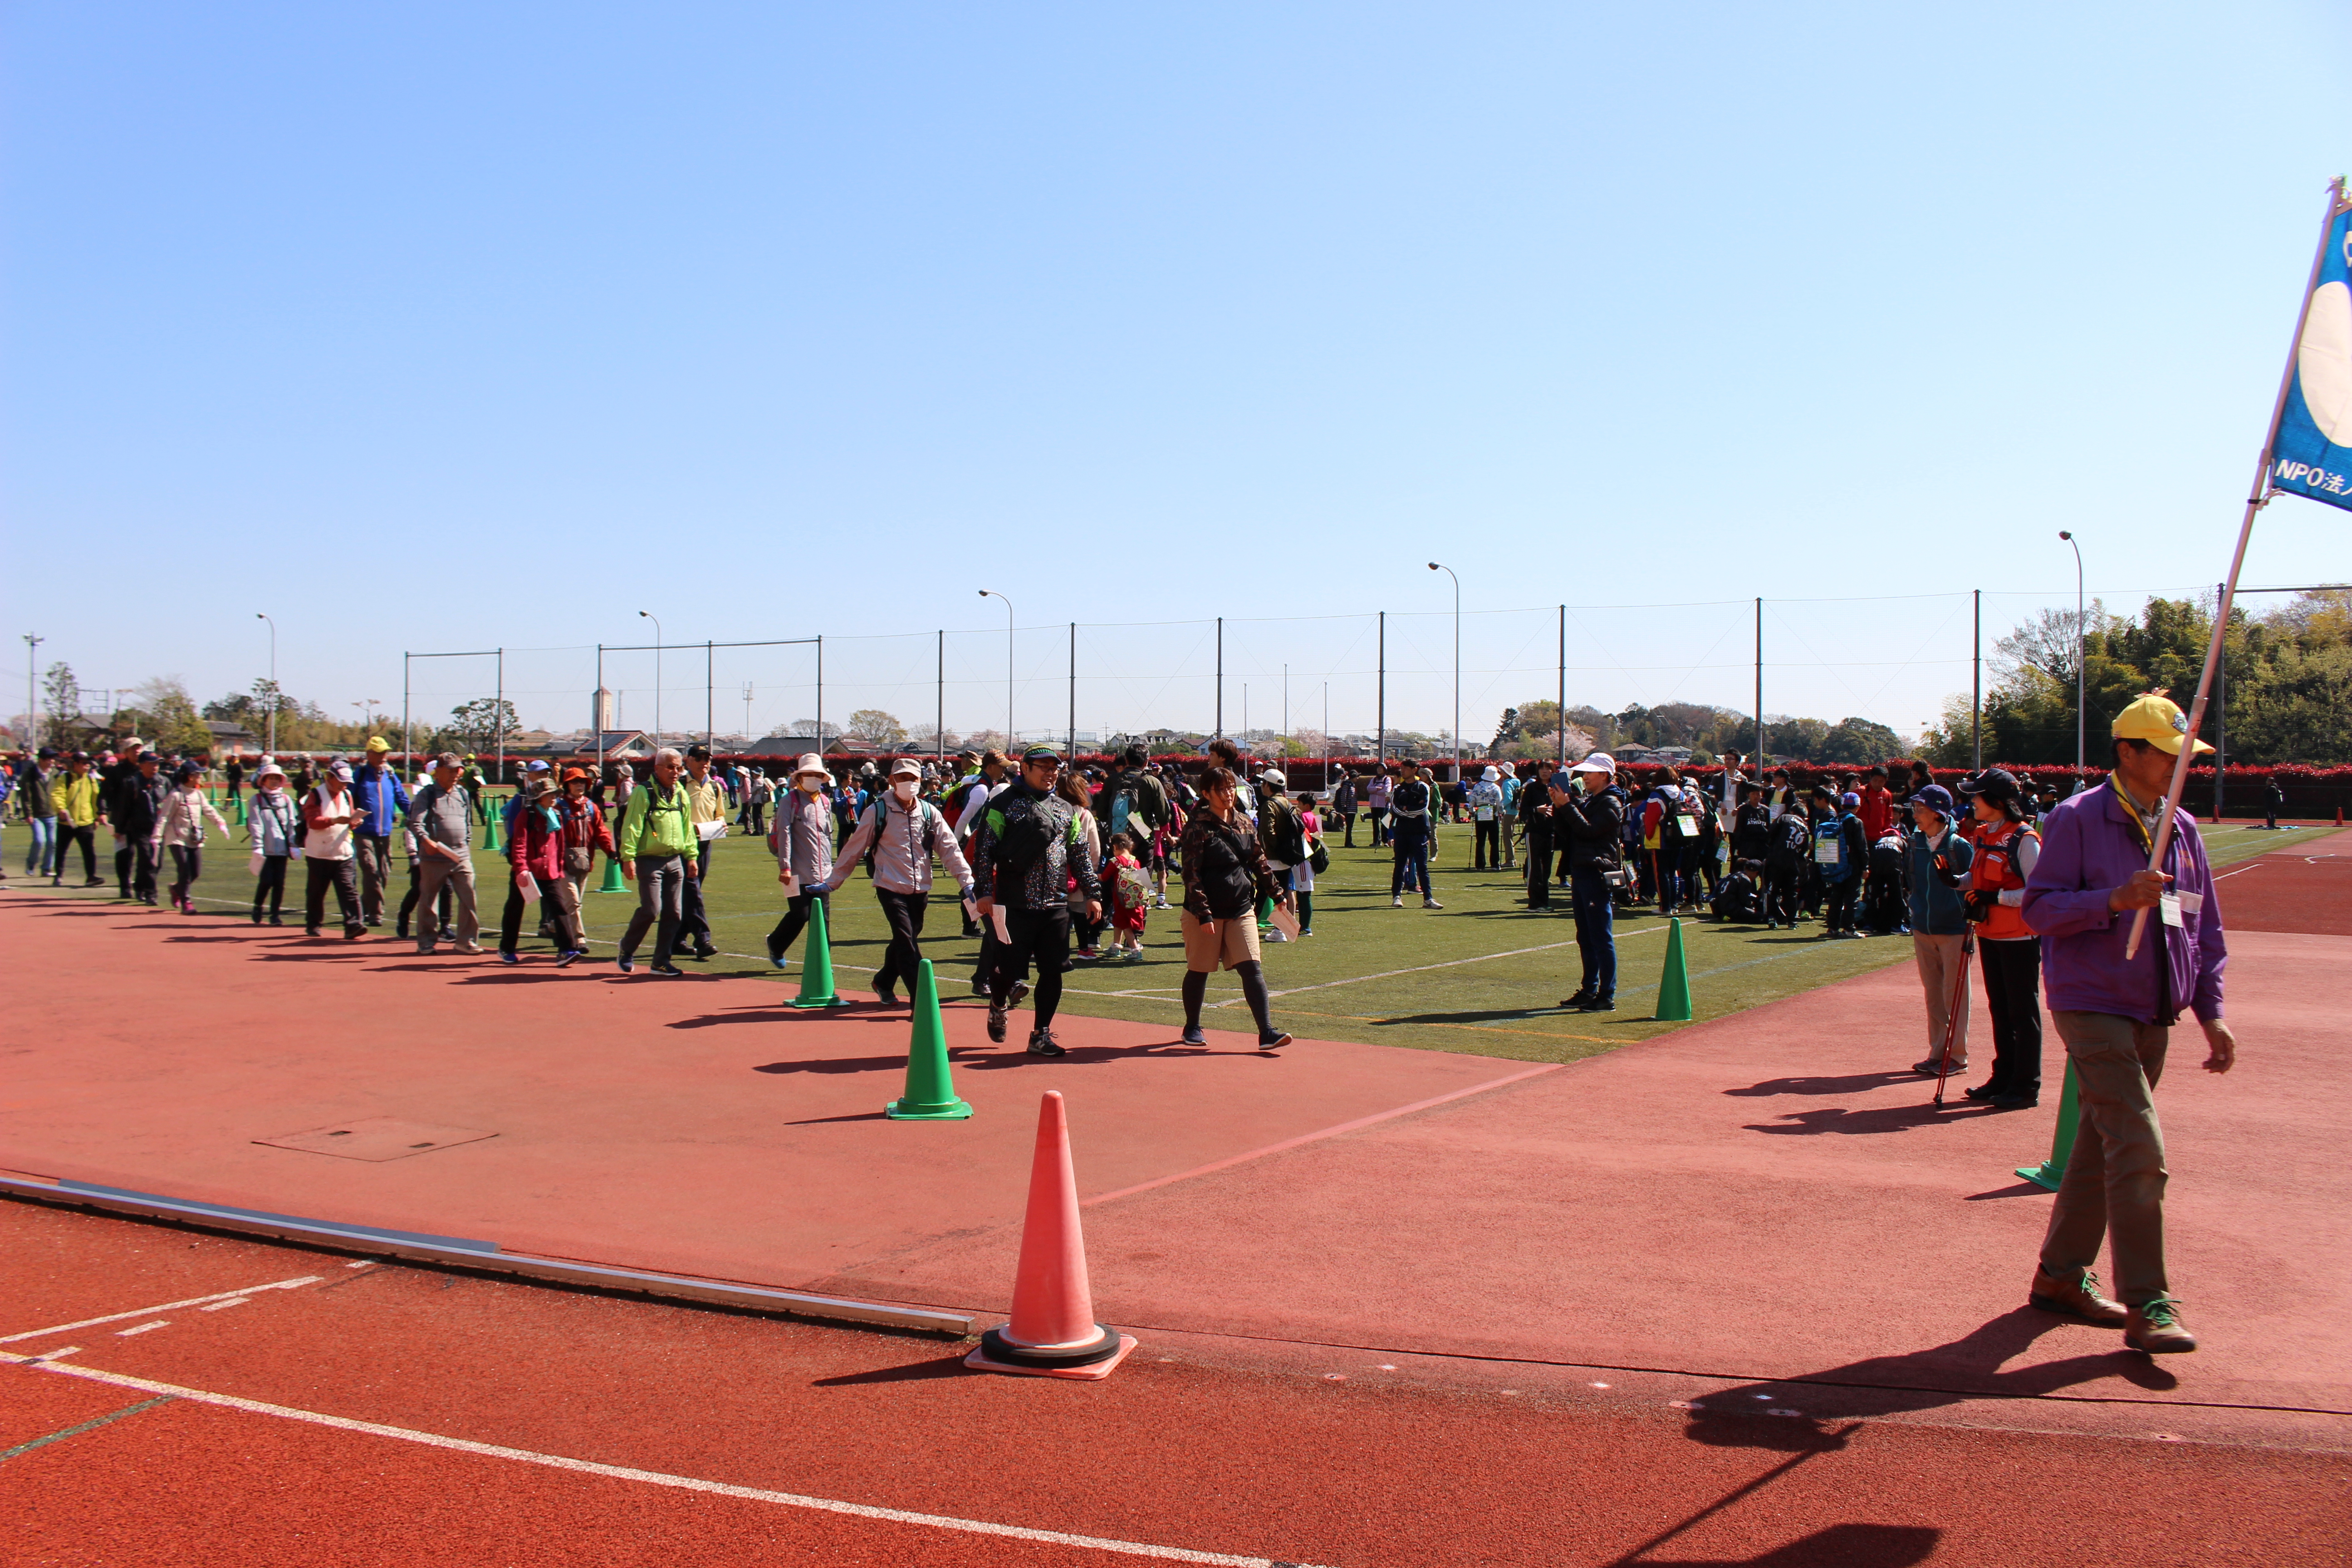 写真：青空のもと、集まった多くの参加者がグラウンドから出発していく様子